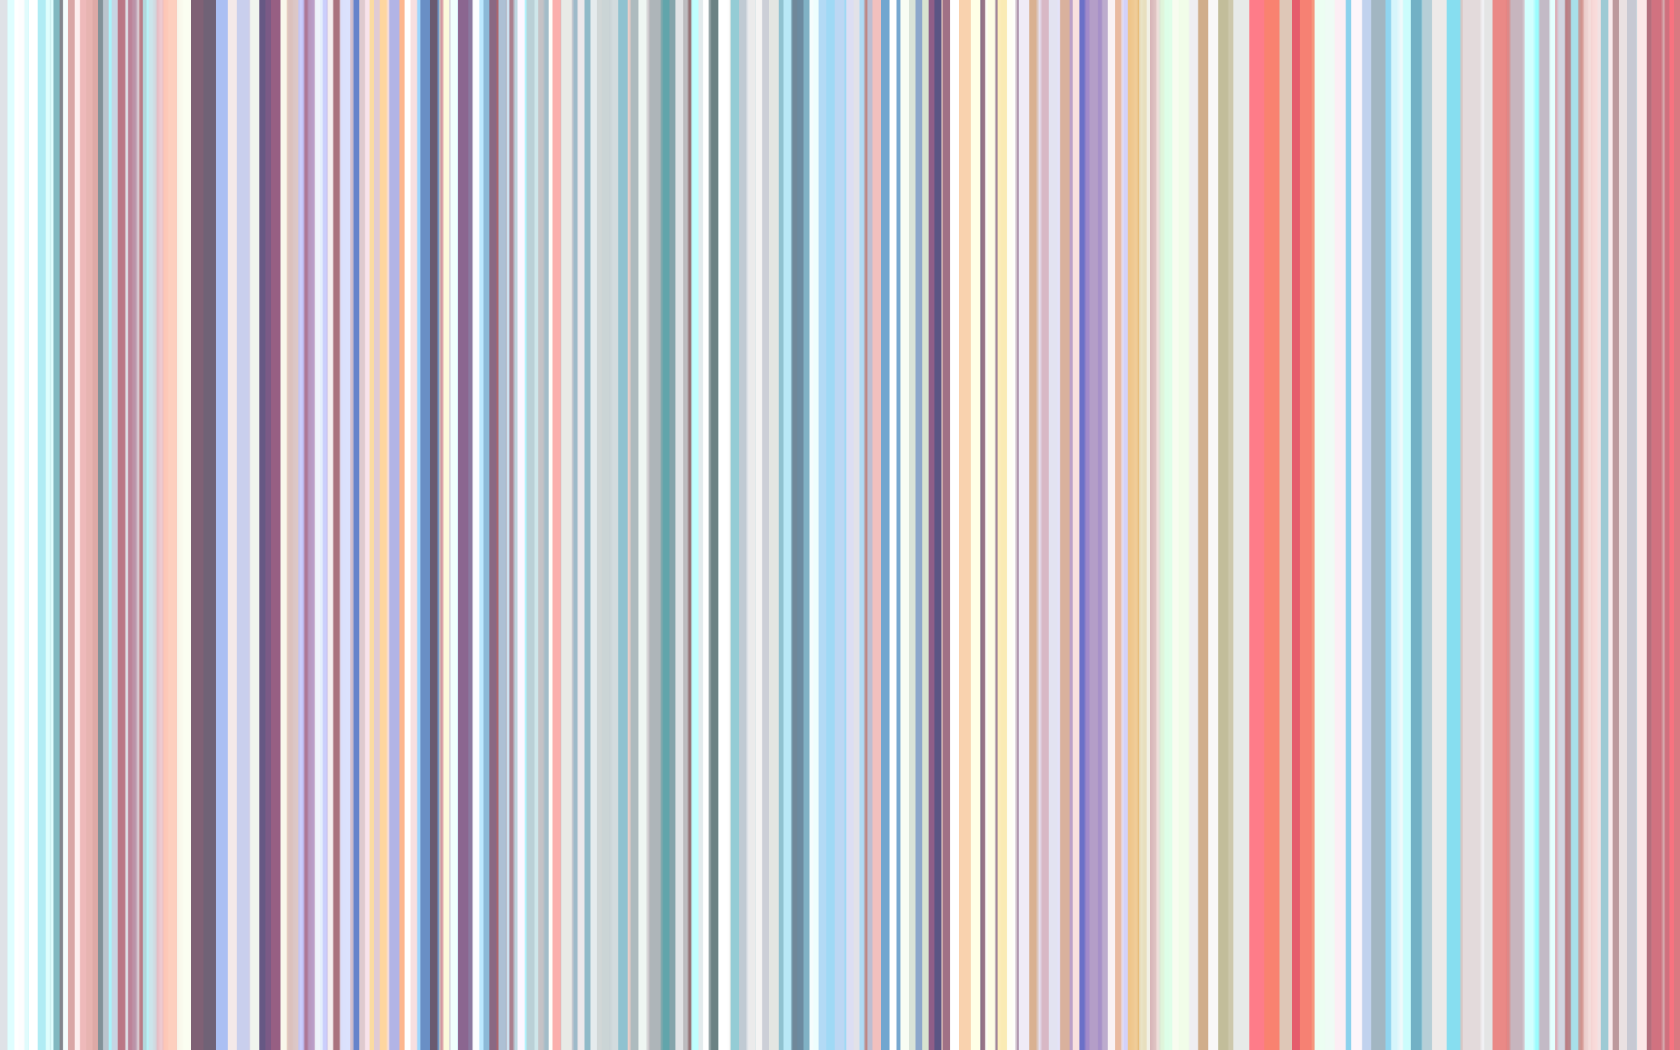 Stripes [1981]